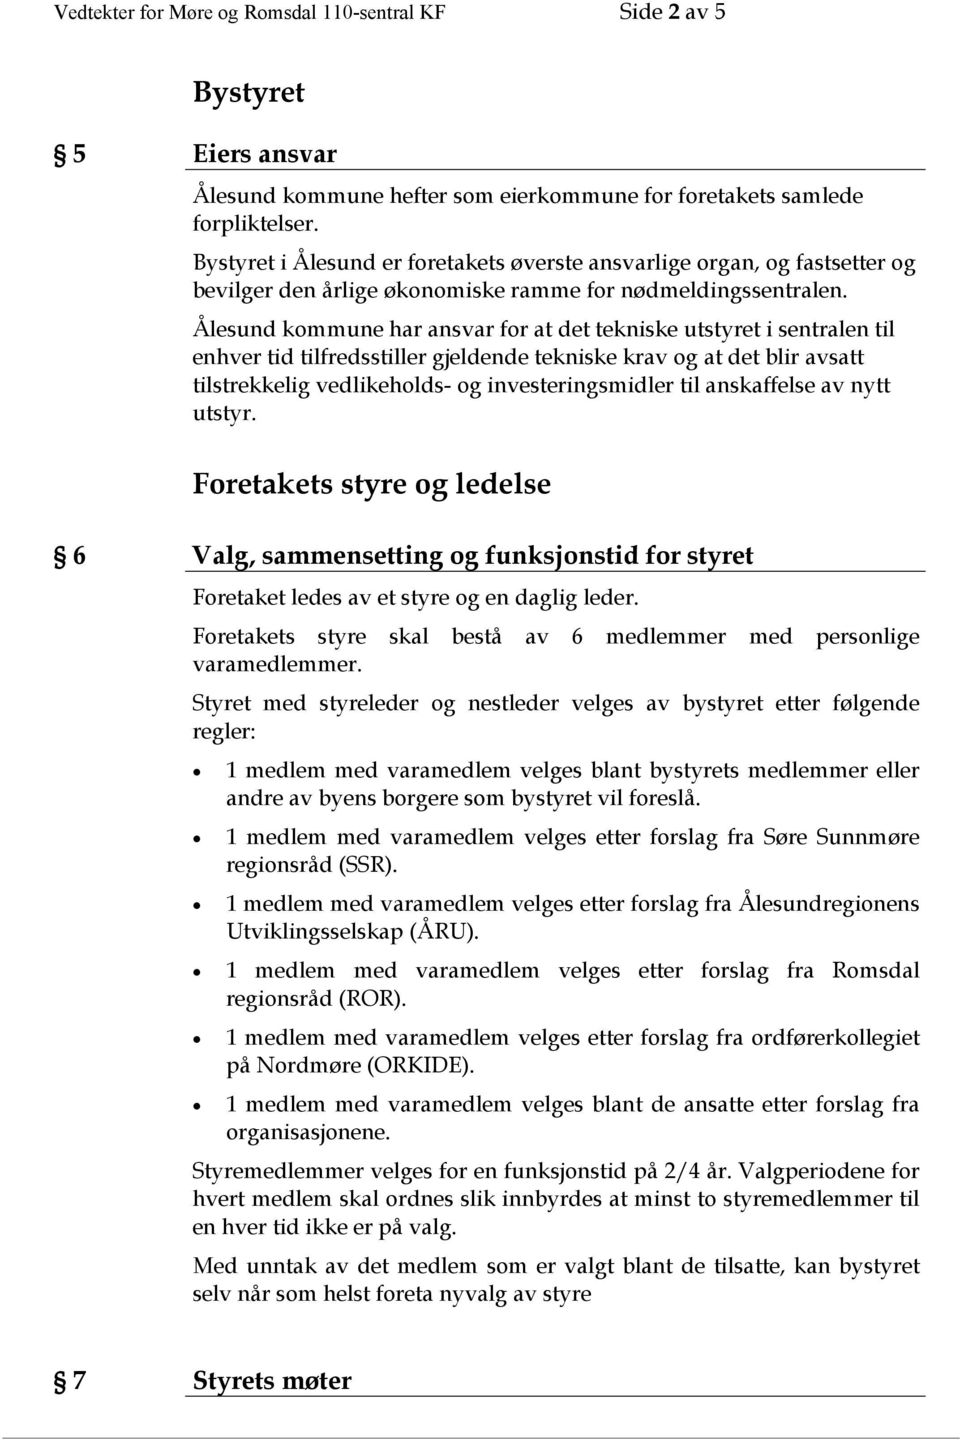 Ålesund kommune har ansvar for at det tekniske utstyret i sentralen til enhver tid tilfredsstiller gjeldende tekniske krav og at det blir avsatt tilstrekkelig vedlikeholds- og investeringsmidler til